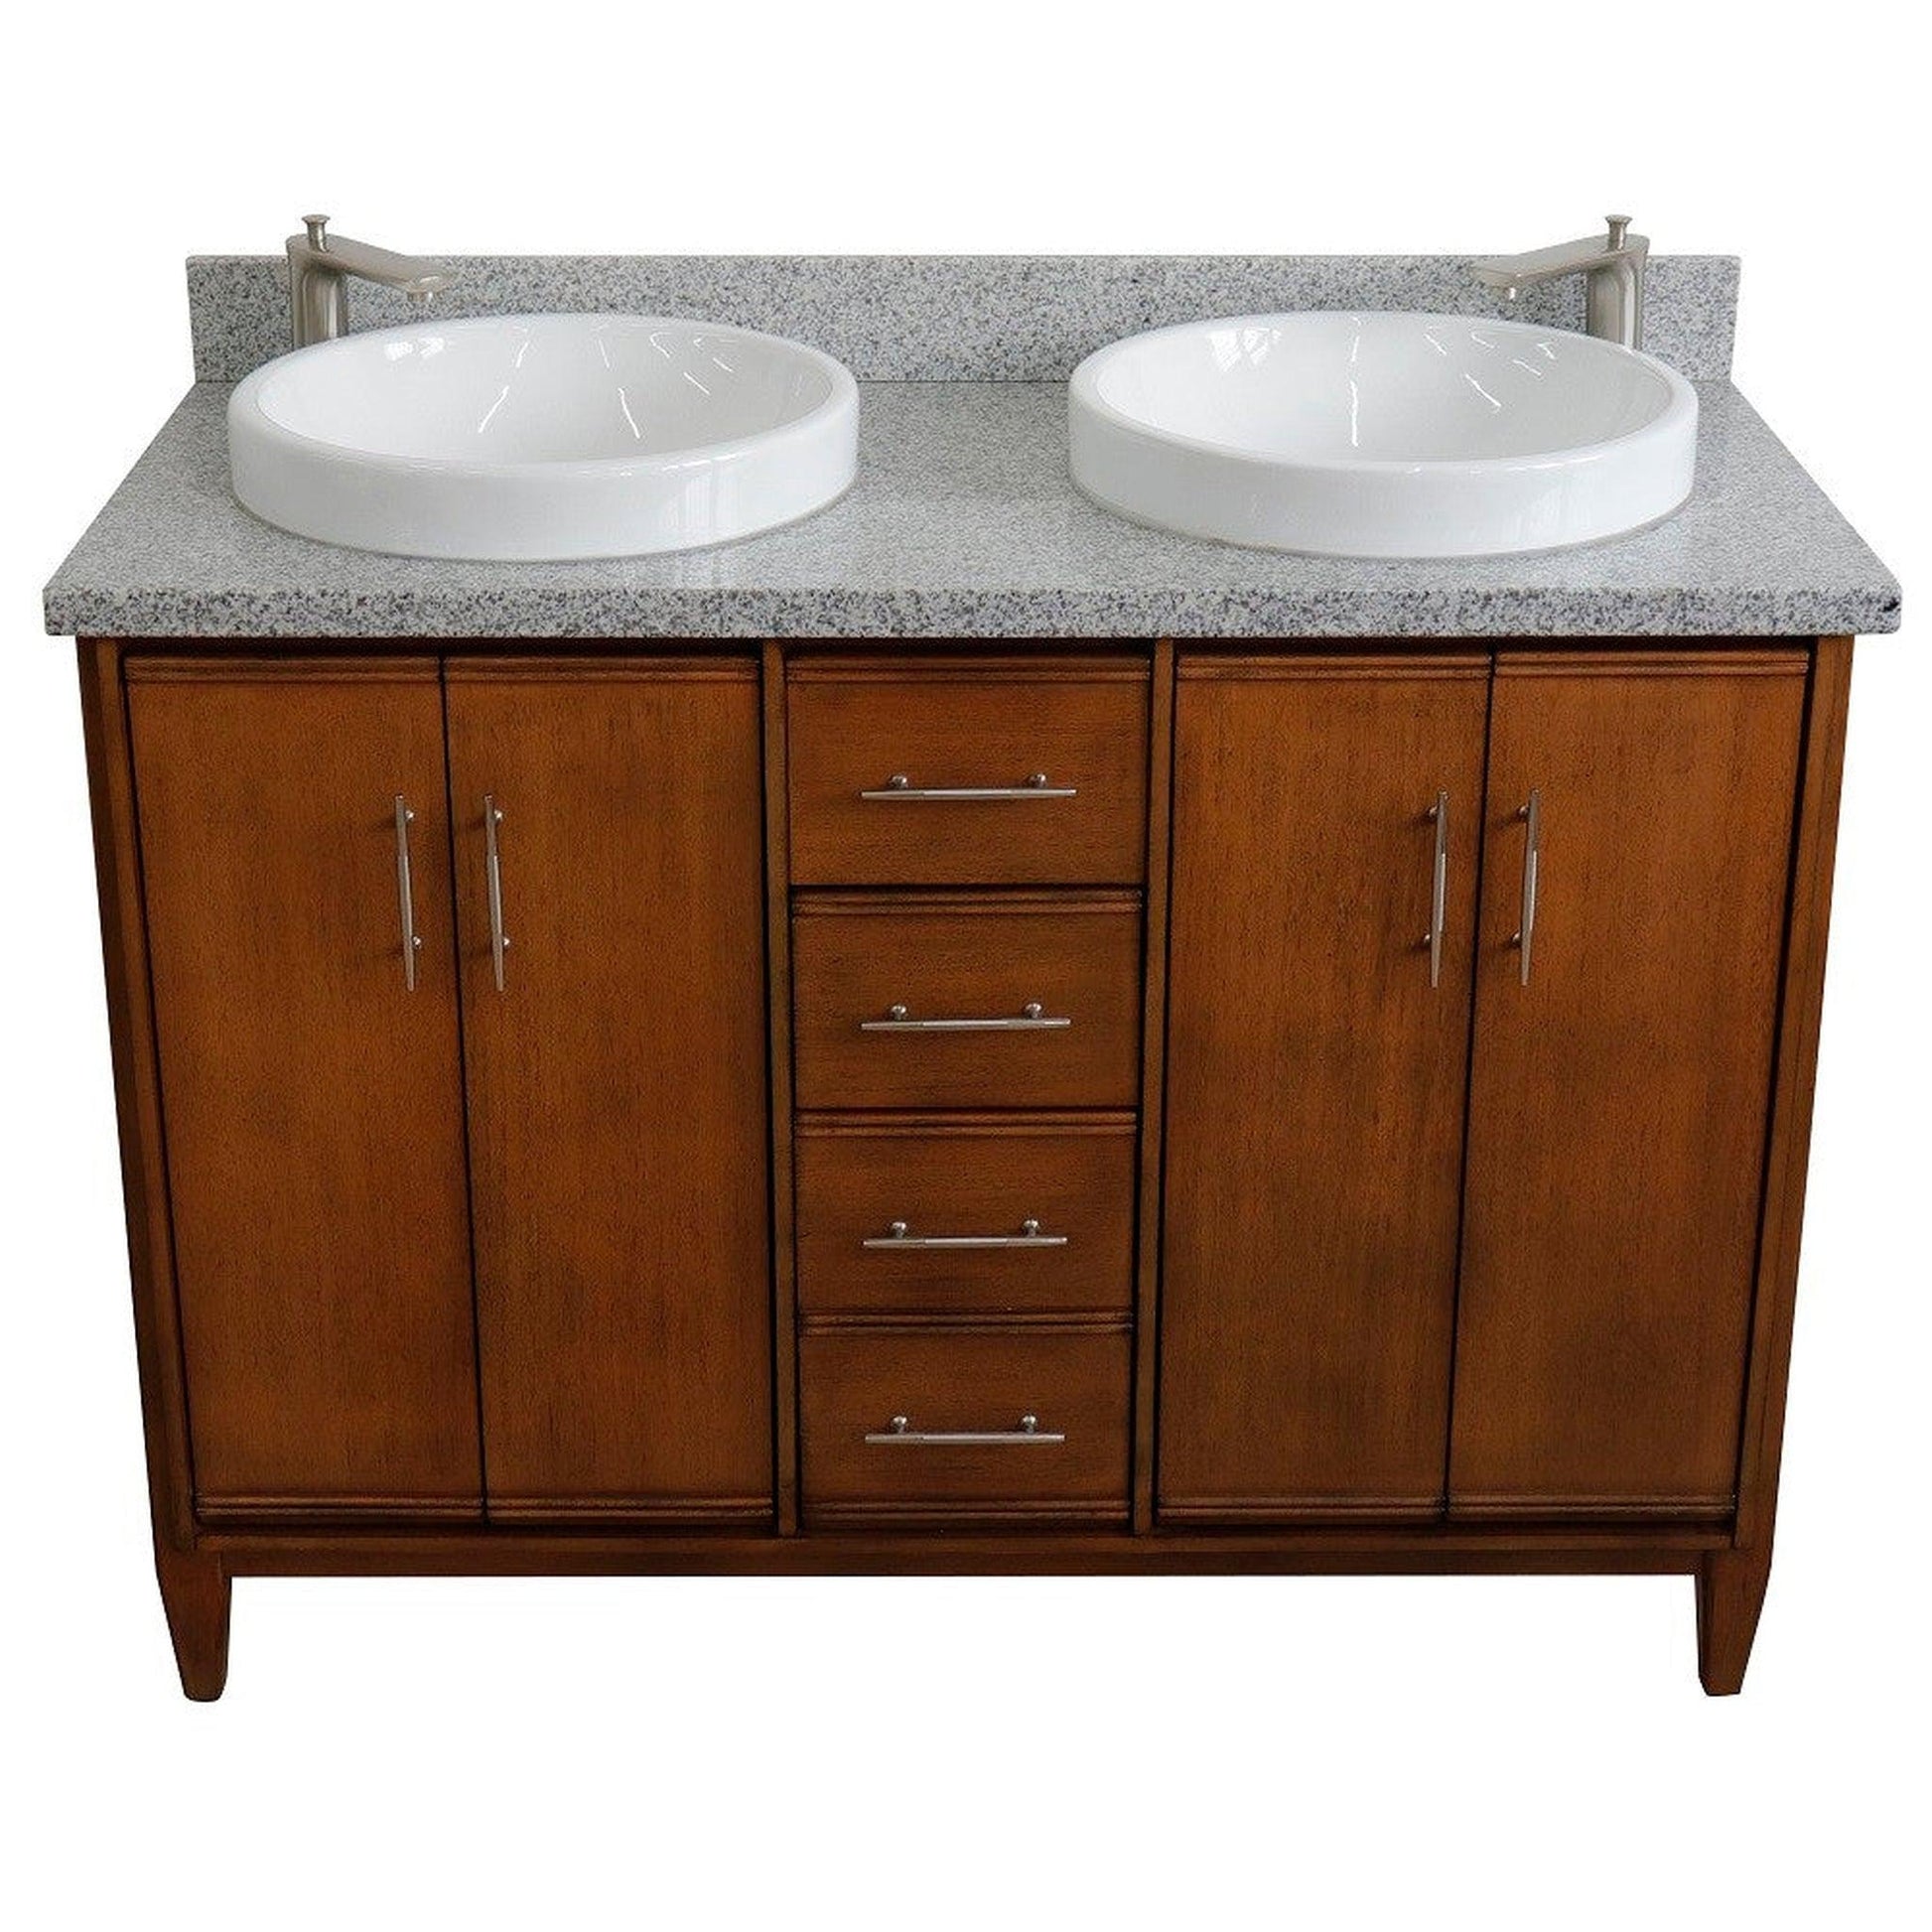 Bellaterra Home MCM 49" 4-Door 2-Drawer Walnut Freestanding Vanity Set With Ceramic Double Vessel Sink and Gray Granite Top